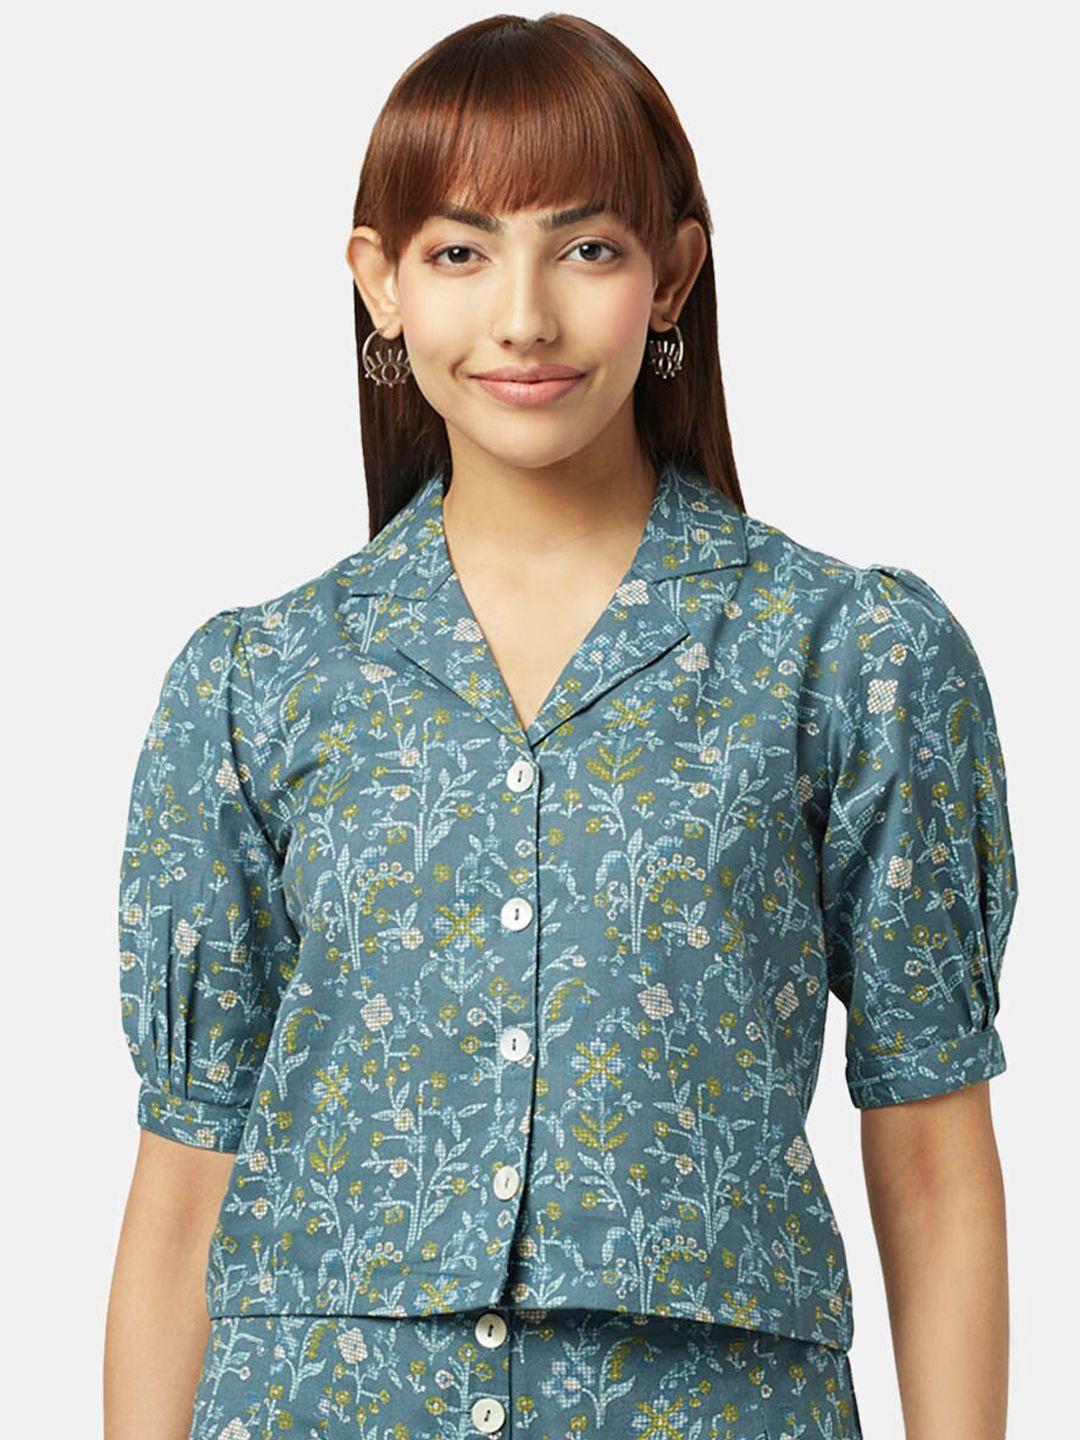 akkriti by pantaloons floral print shirt style top